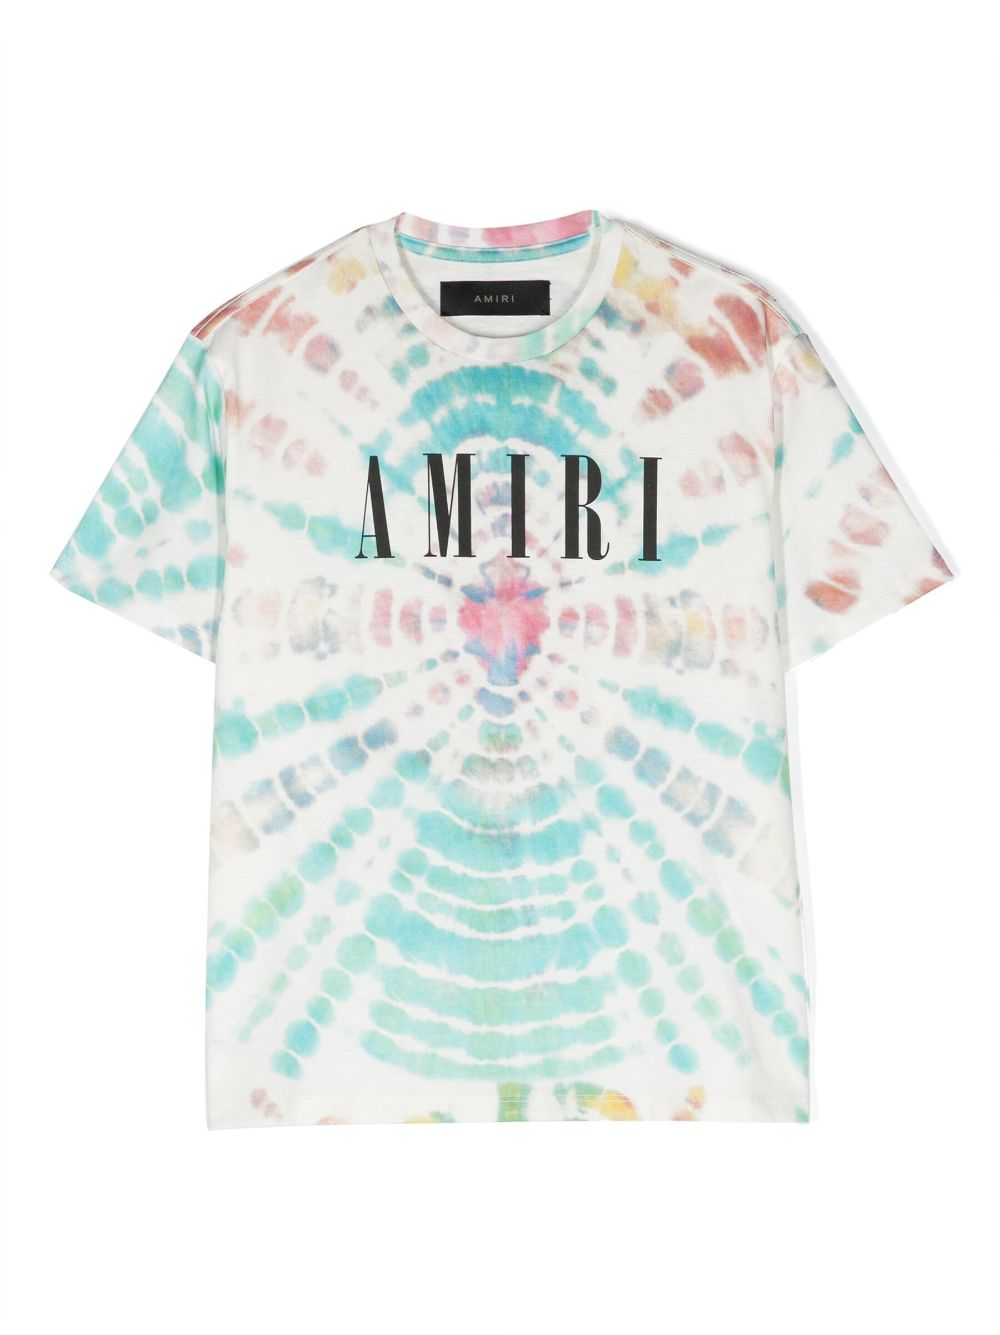 AMIRI KIDS tie-dye print cotton T-shirt - White